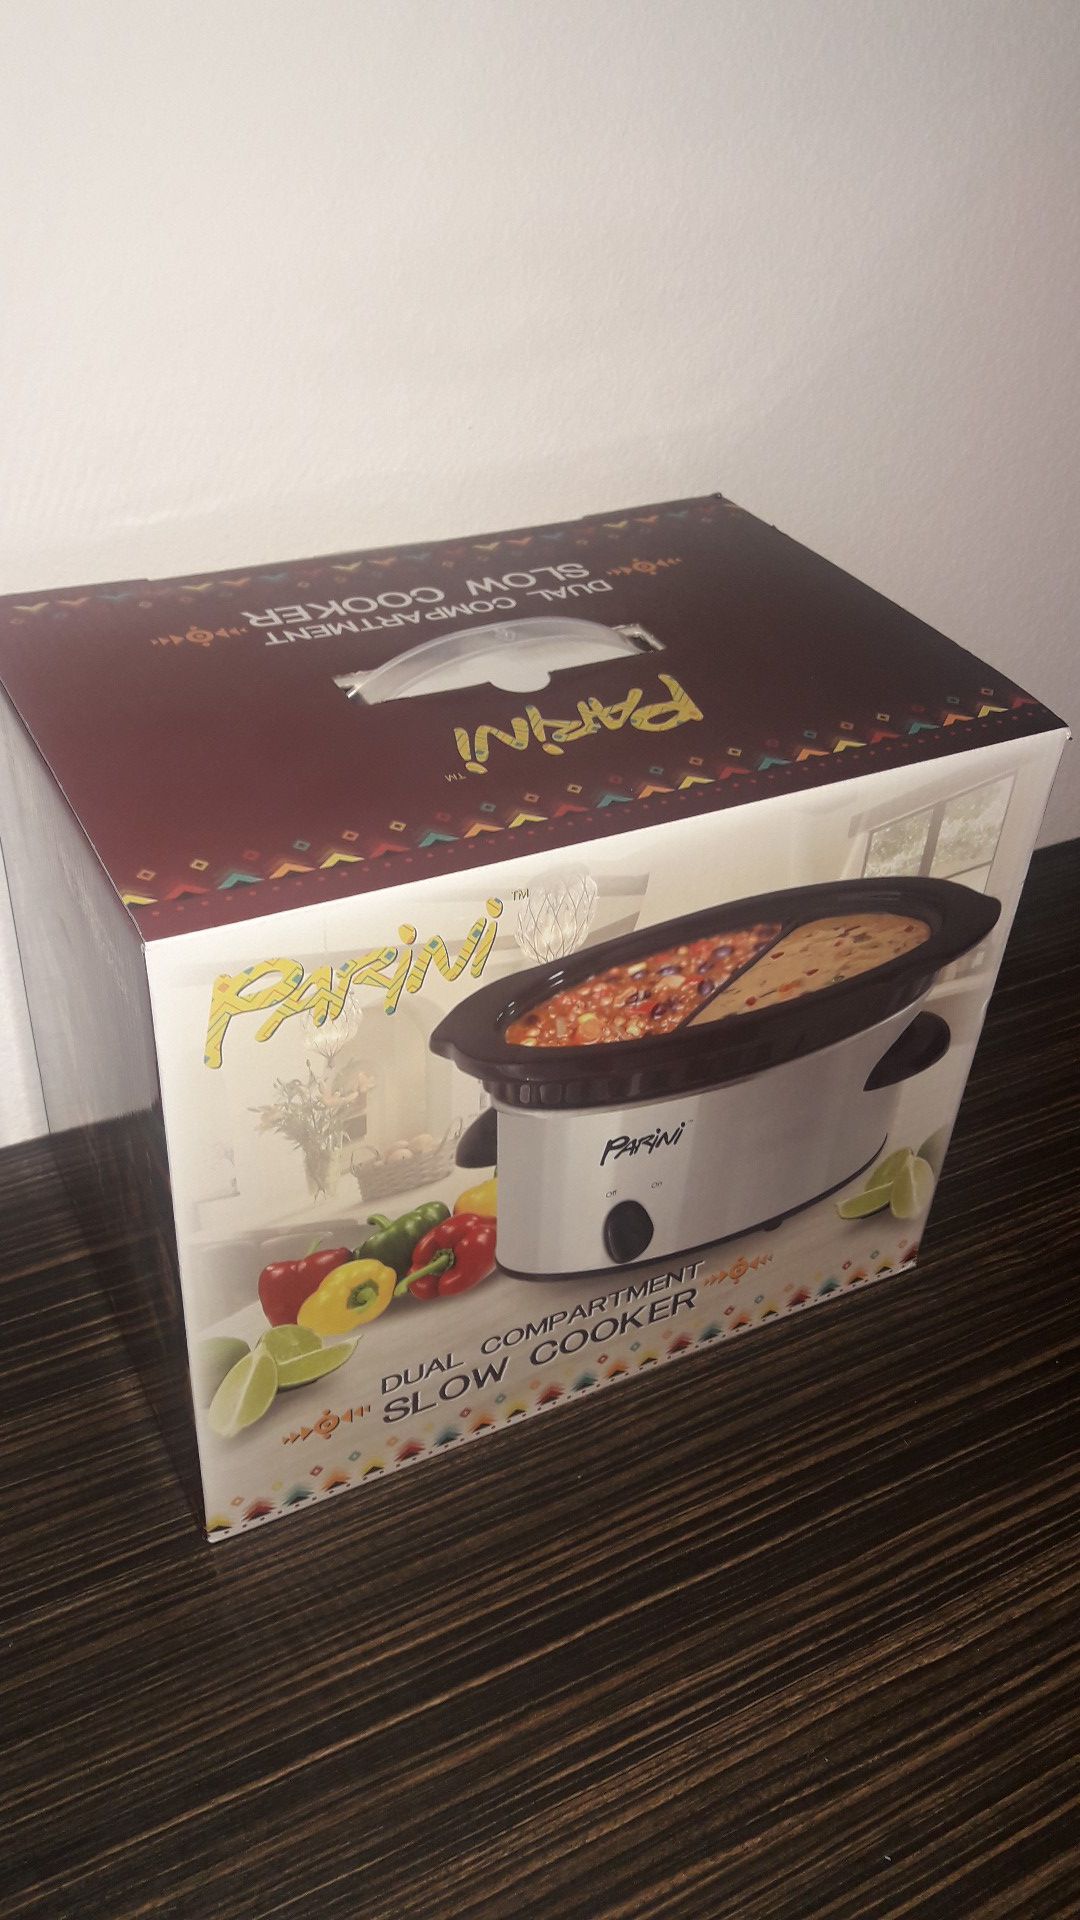 Parini Dual Compartment Slow Cooker Warmer Crock Pot 32 oz +Recipes Sealed